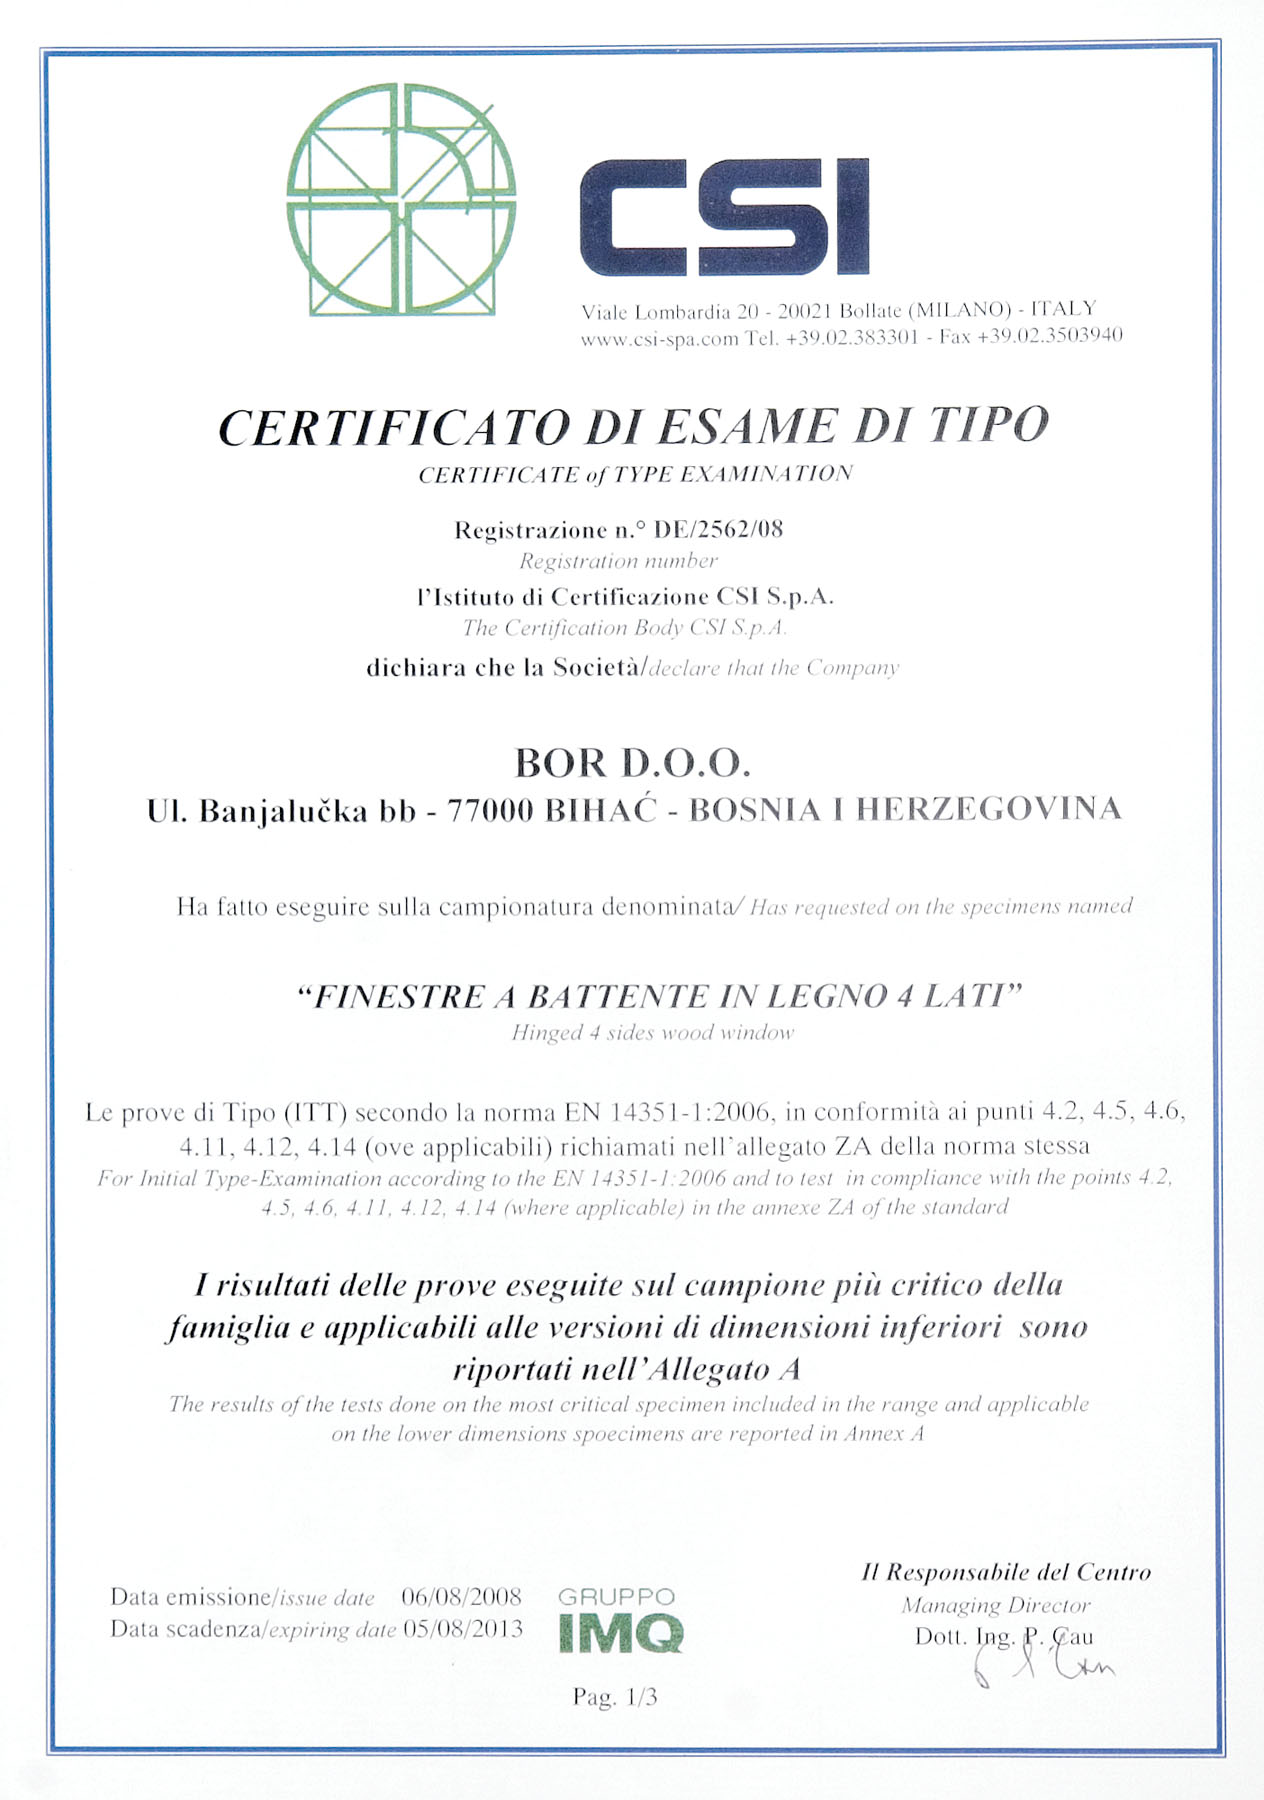 CSI - Certificato di esame di tipo certificate of type examination